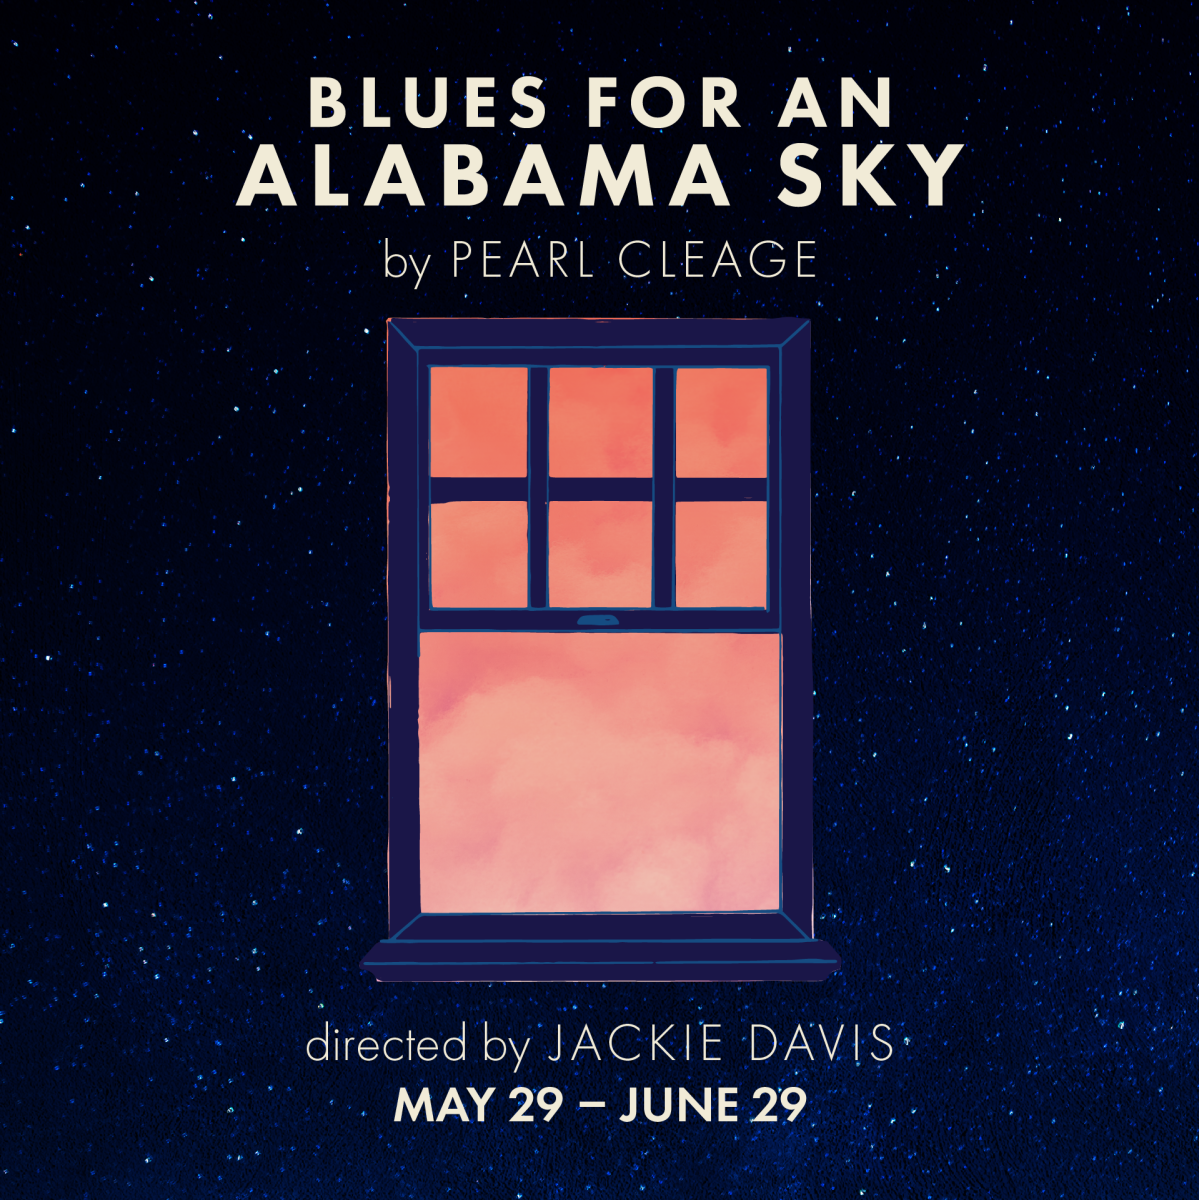 Trinity Rep 24-25 Blues for an Alabama Sky